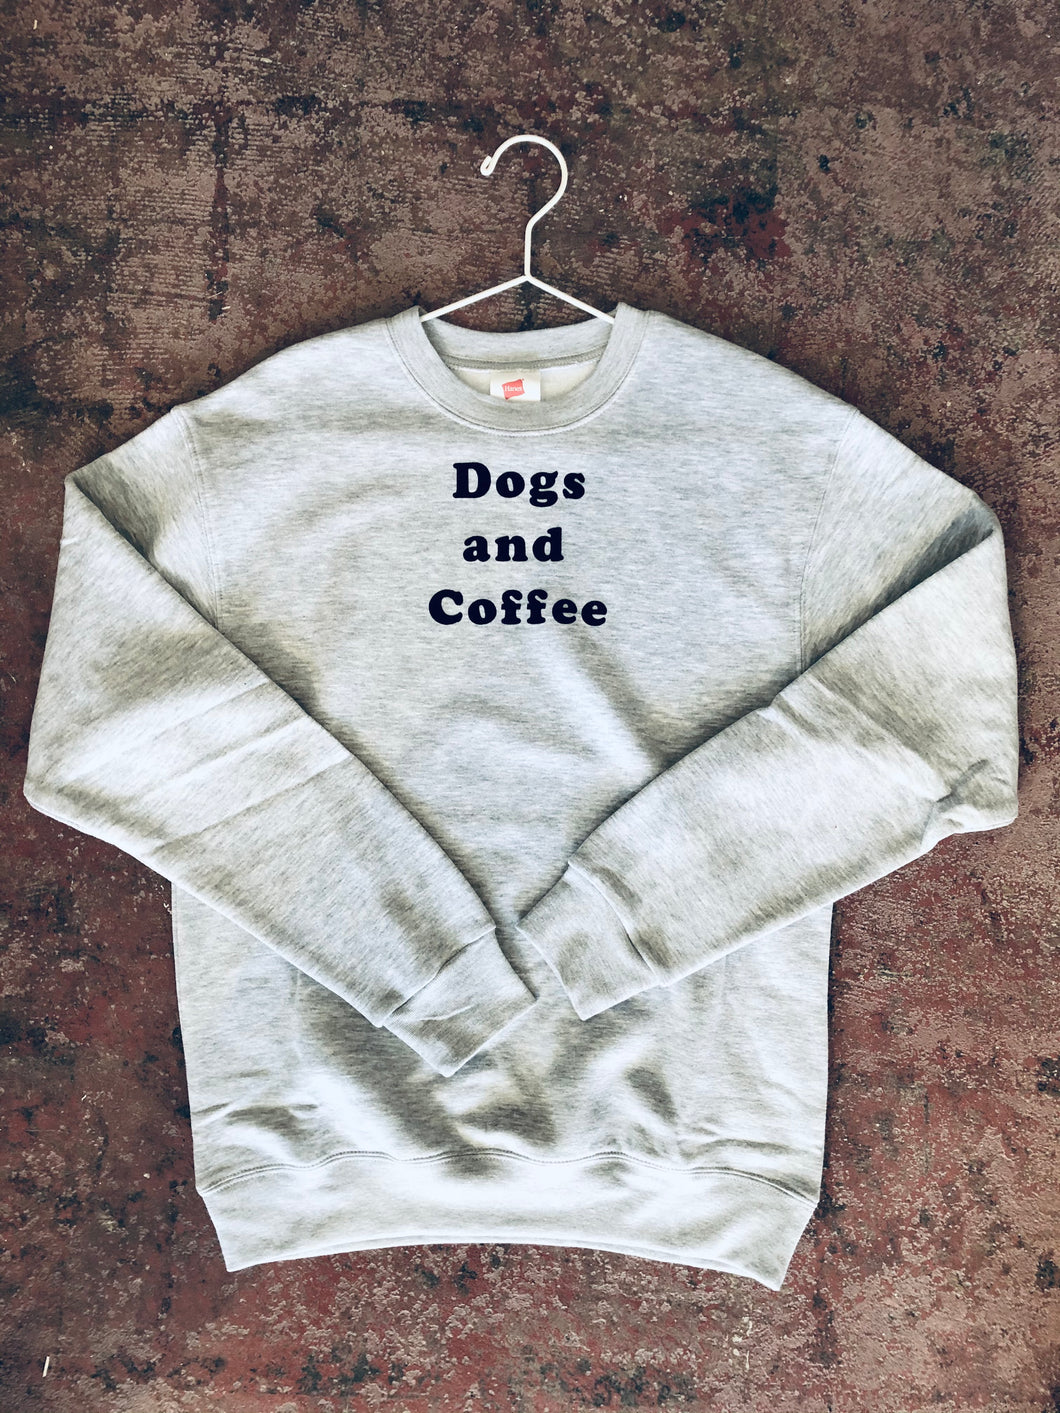 Dogs and Coffee sweatshirt